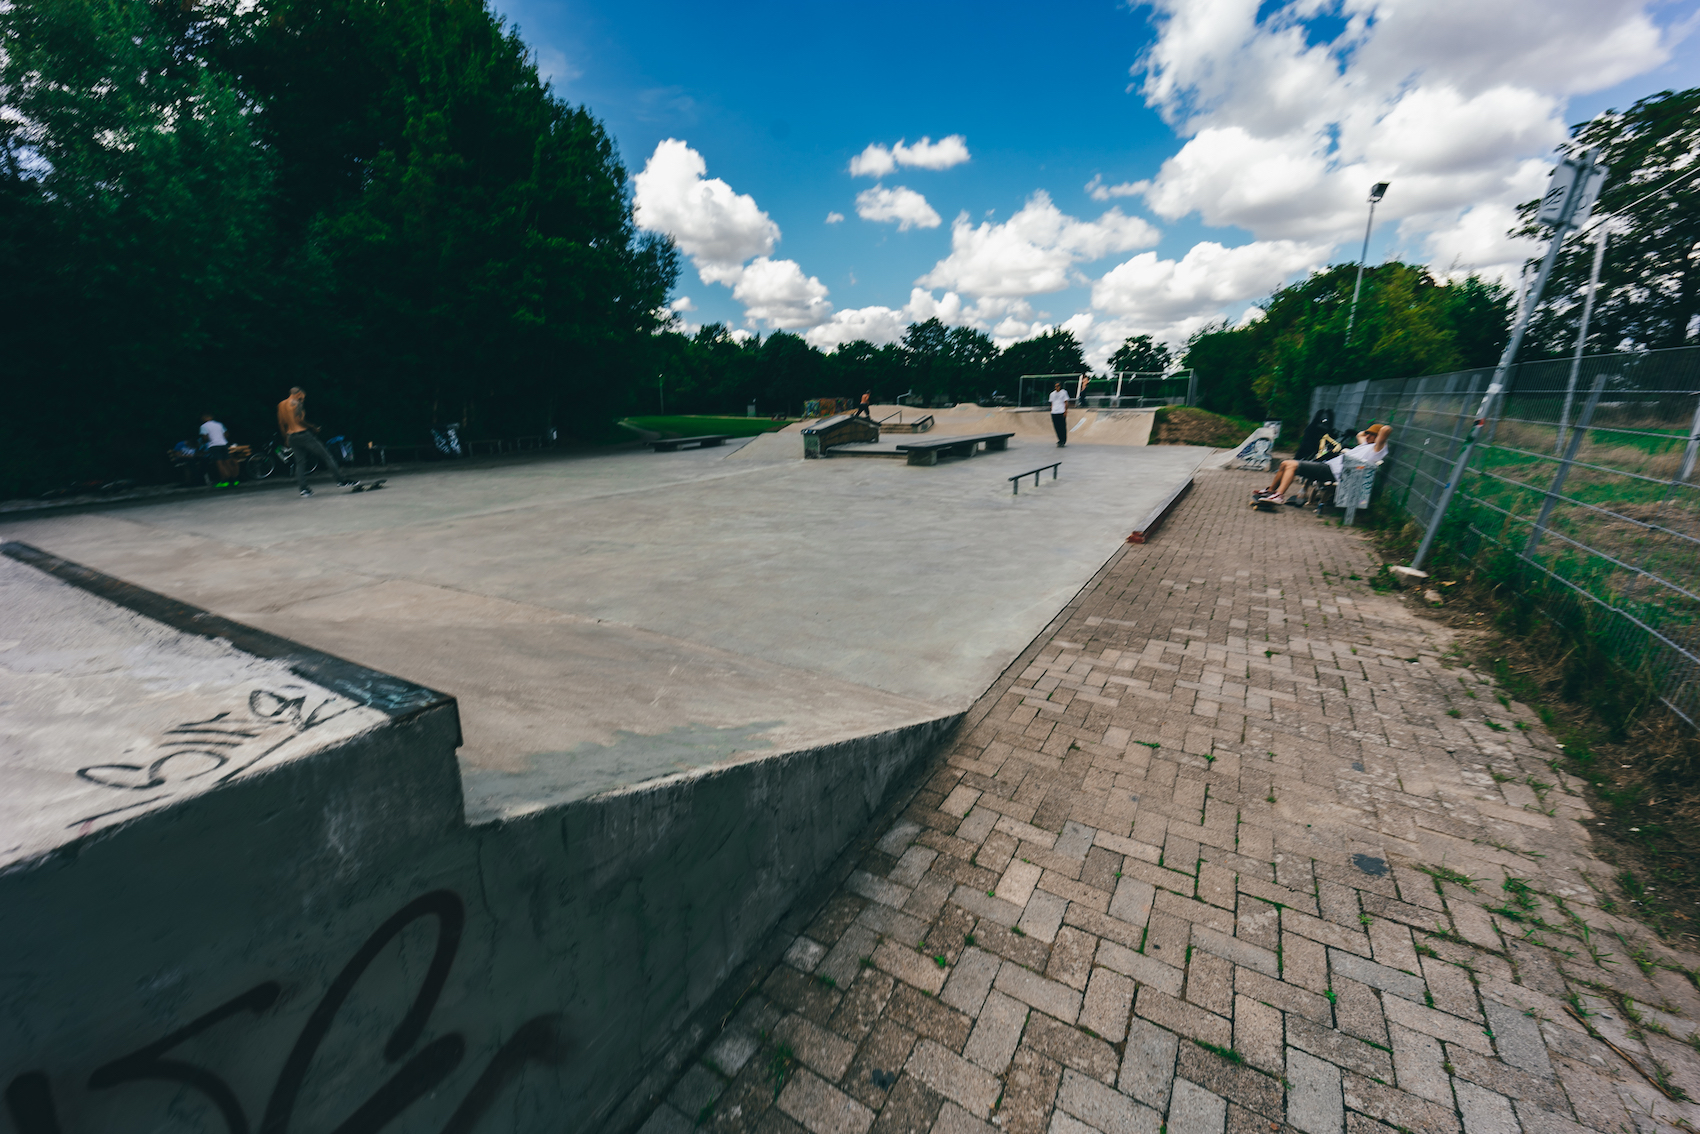 Hildesheim skatepark